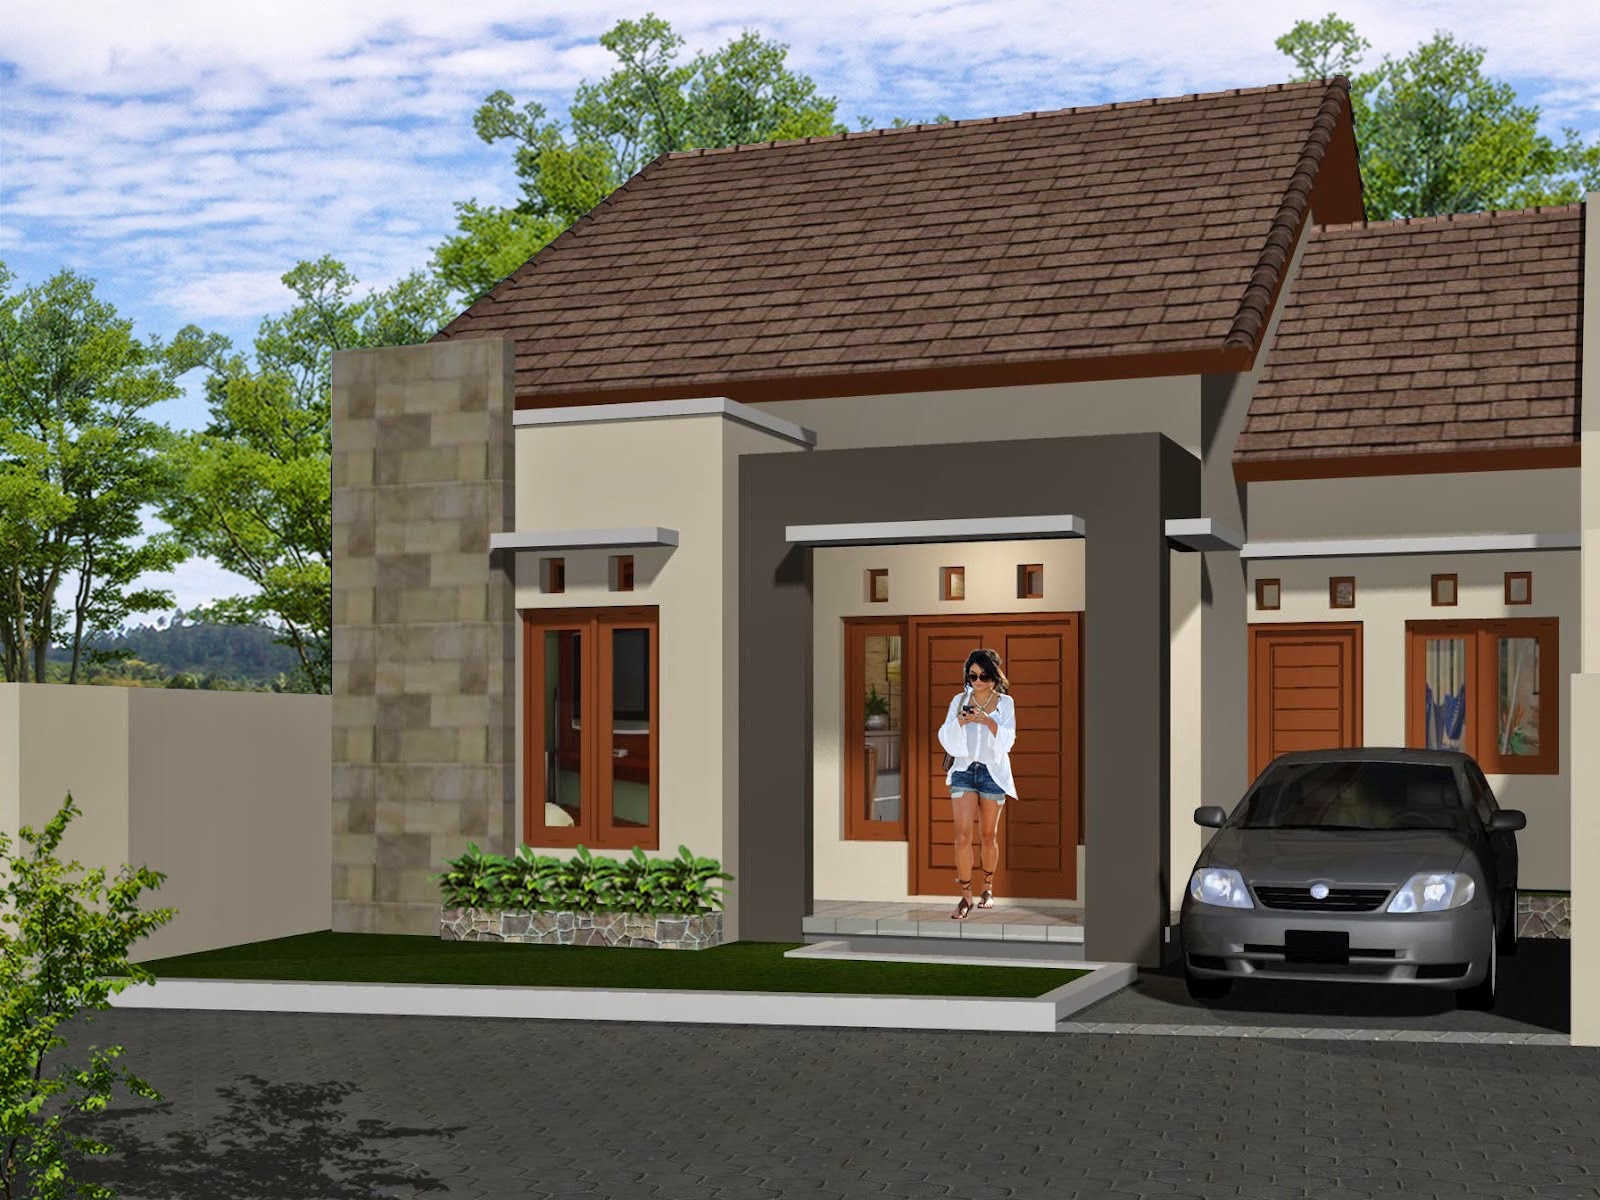 Gambar Rumah Minimalis Satu Lantai Terbaru 2015 Desain Rumah Idaman